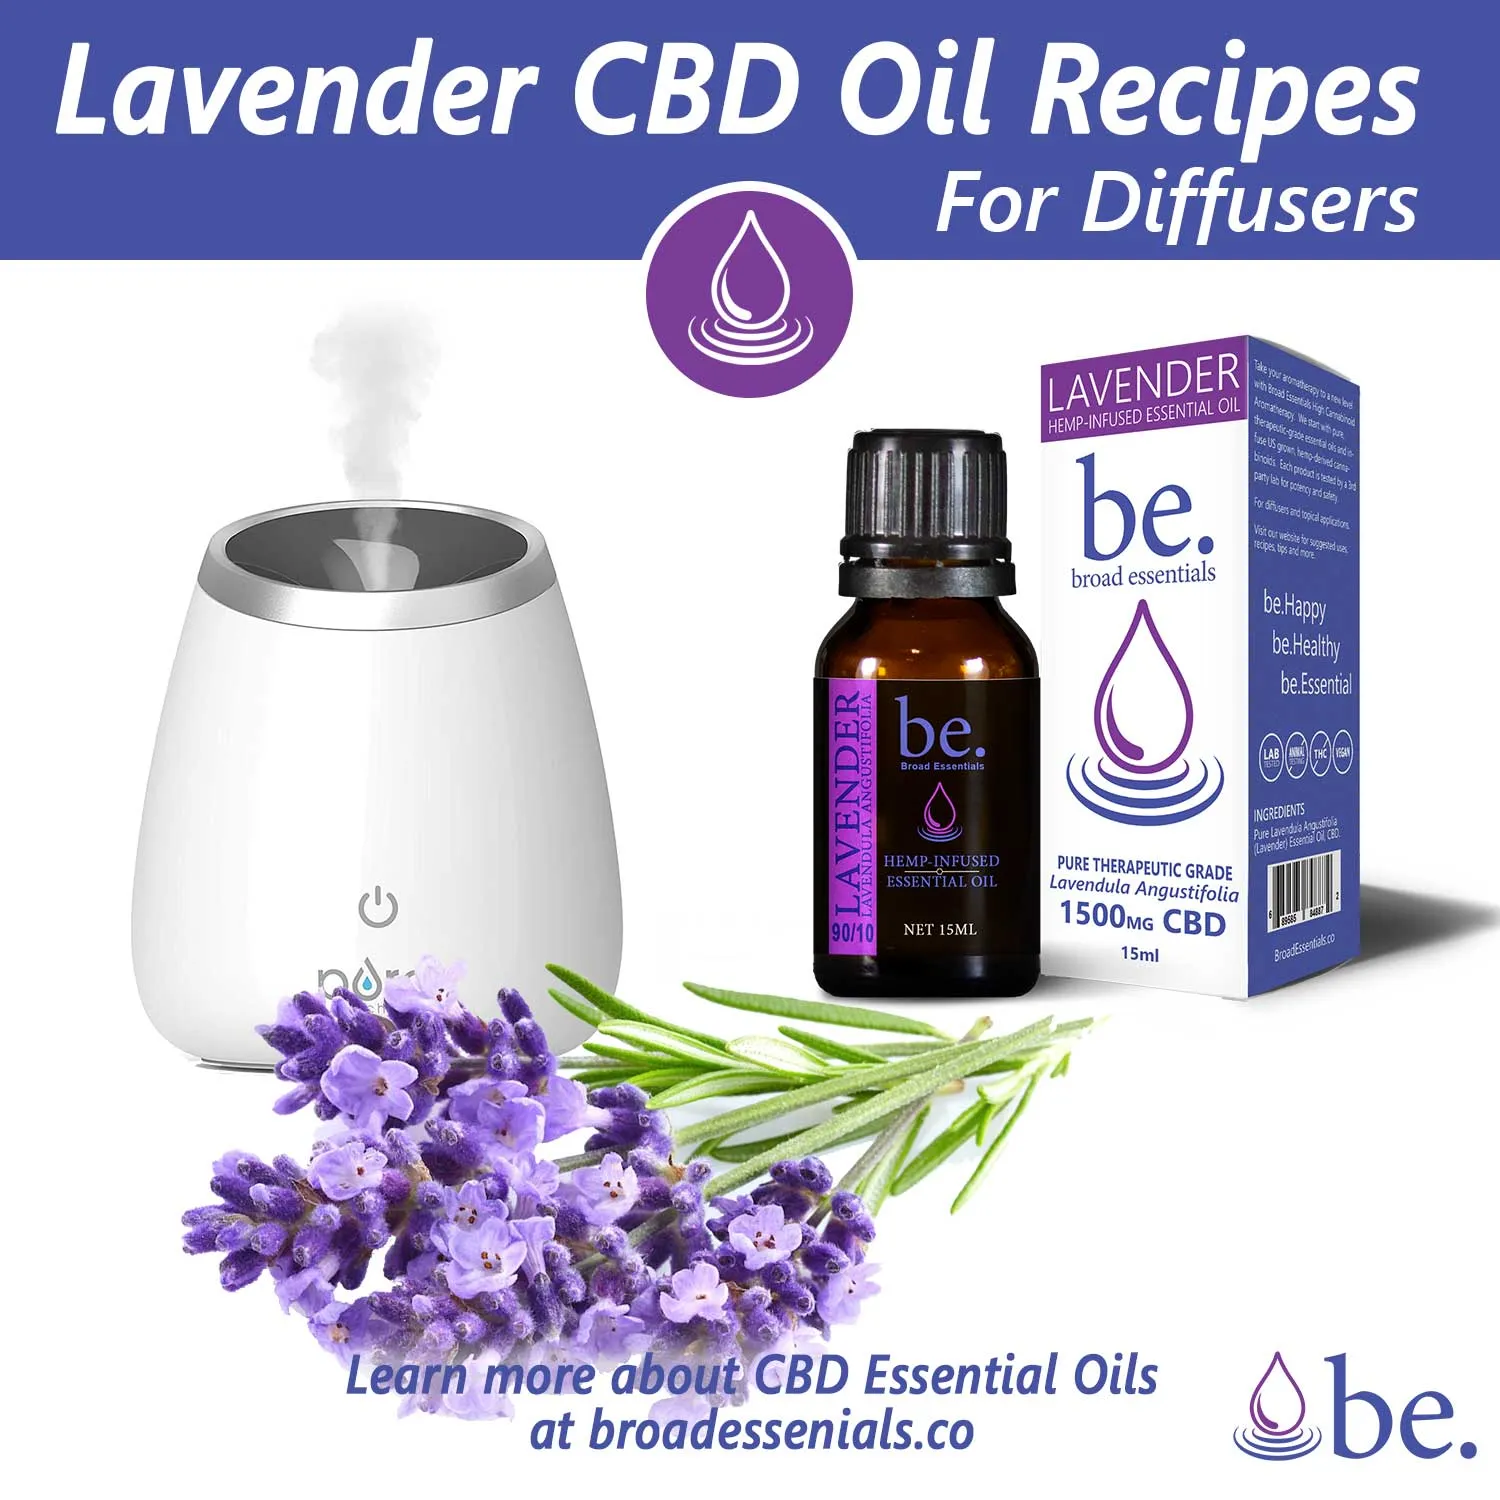 Lavender CBD oil Diffuser Recipes